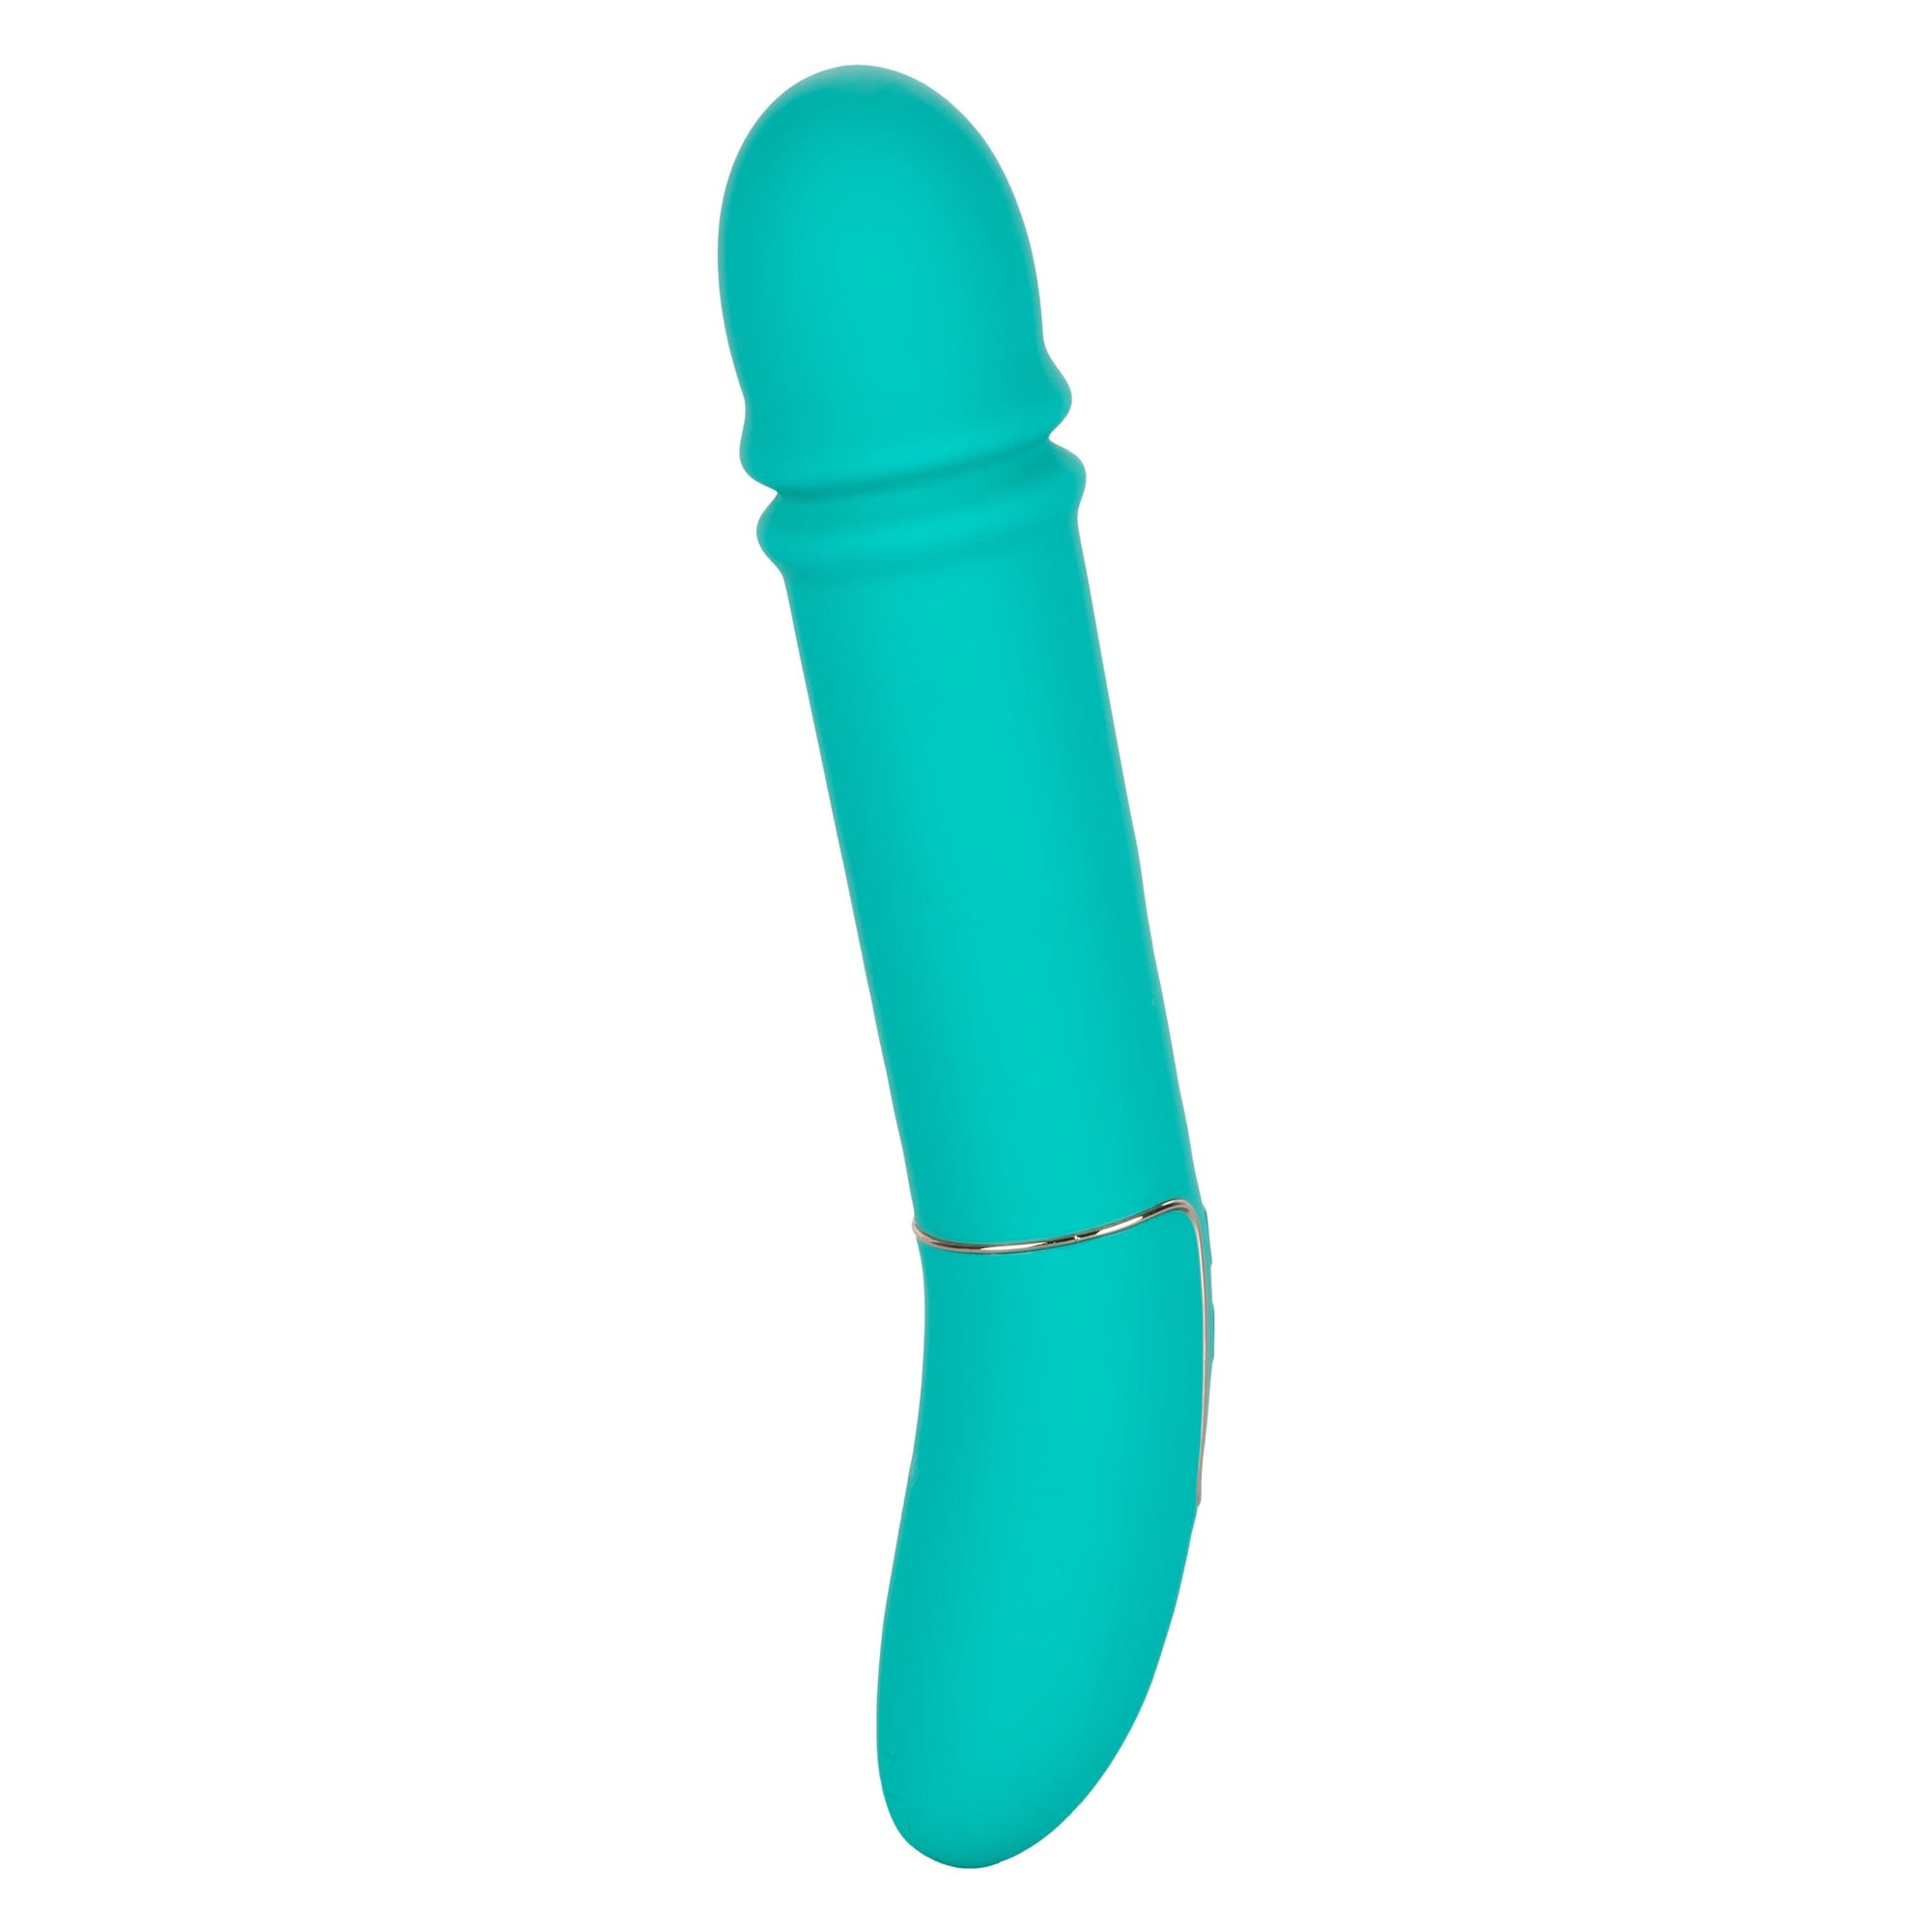 California Exotics - Shameless Flirt Vibrator (Green) -  Non Realistic Dildo w/o suction cup (Vibration) Rechargeable  Durio.sg